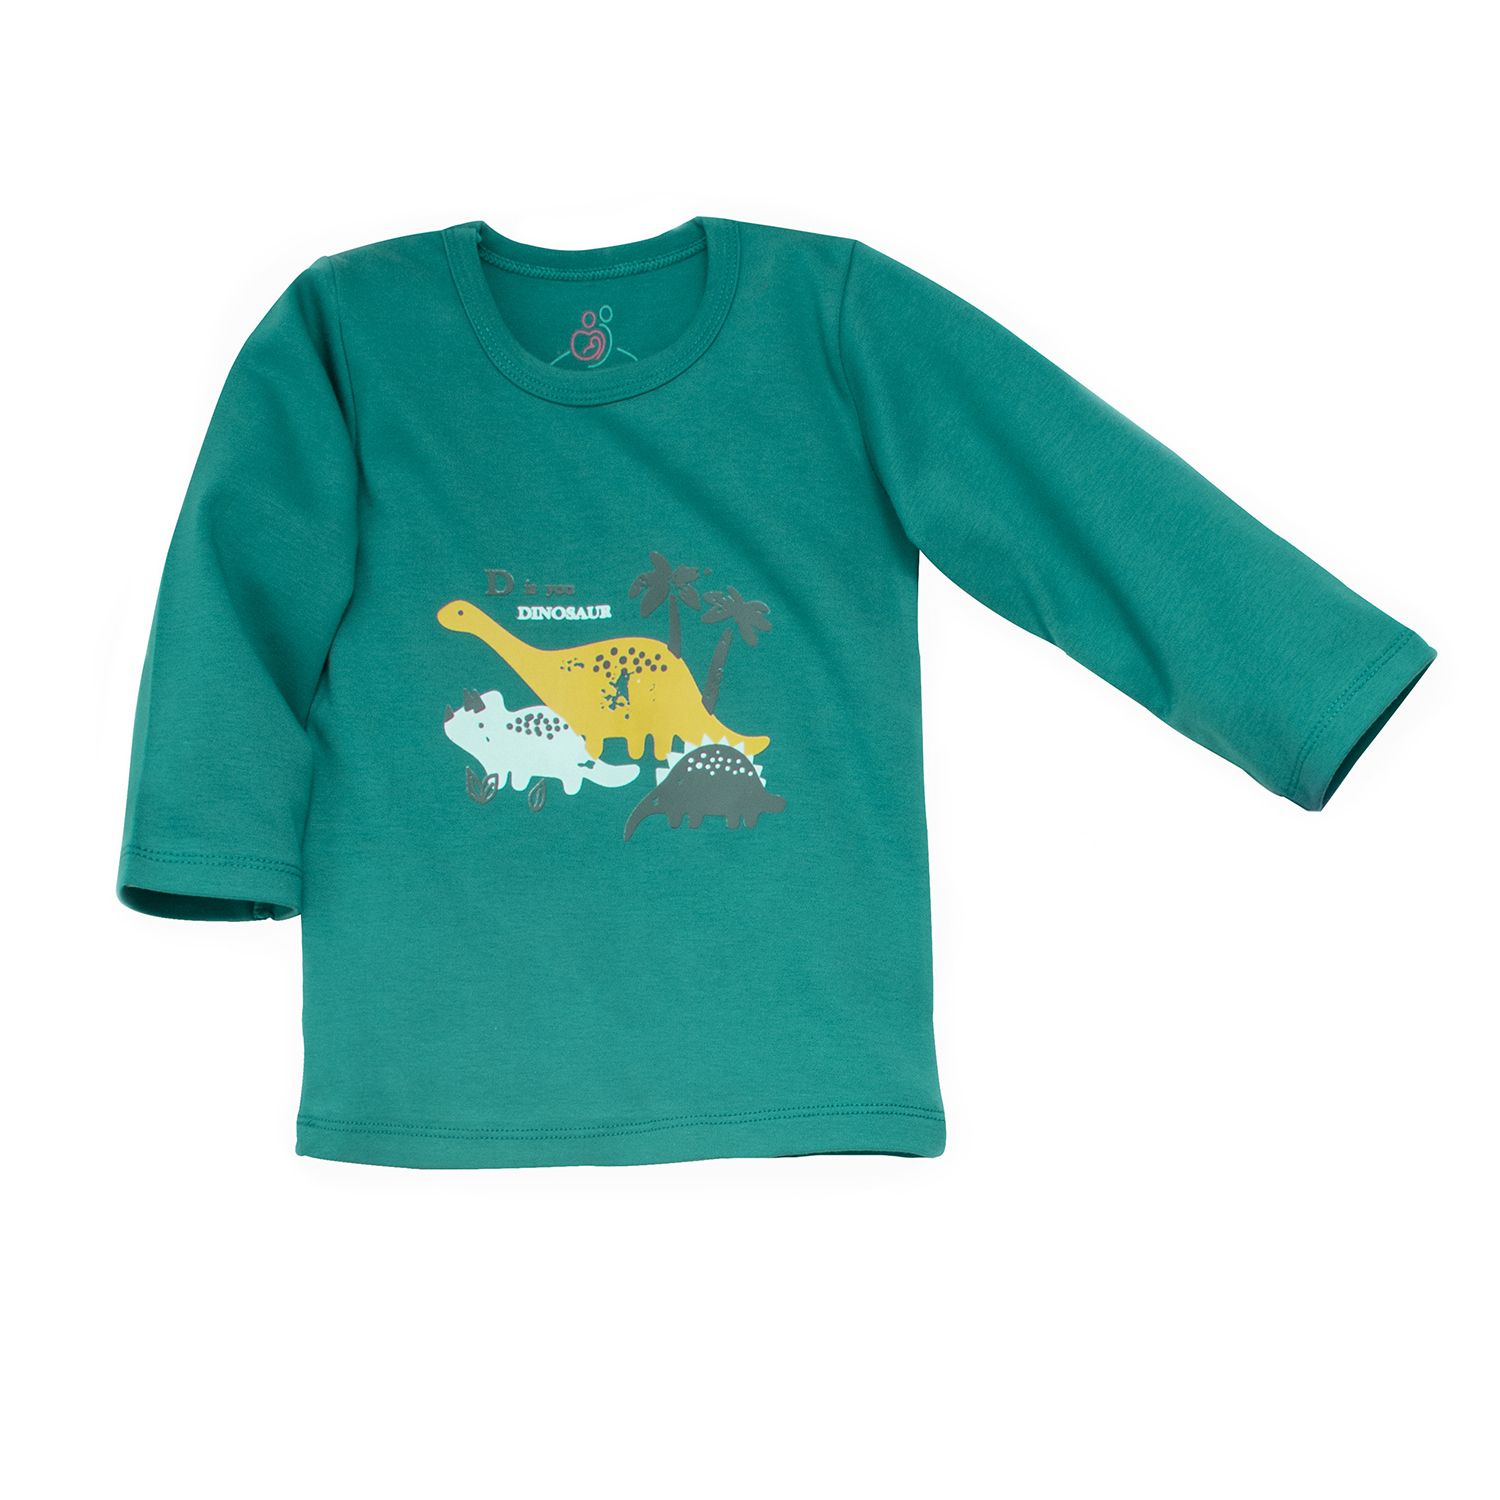 ست تی شرت و شلوار بچگانه سپیدپوش مدل دایناسور کد 101 -  - 4